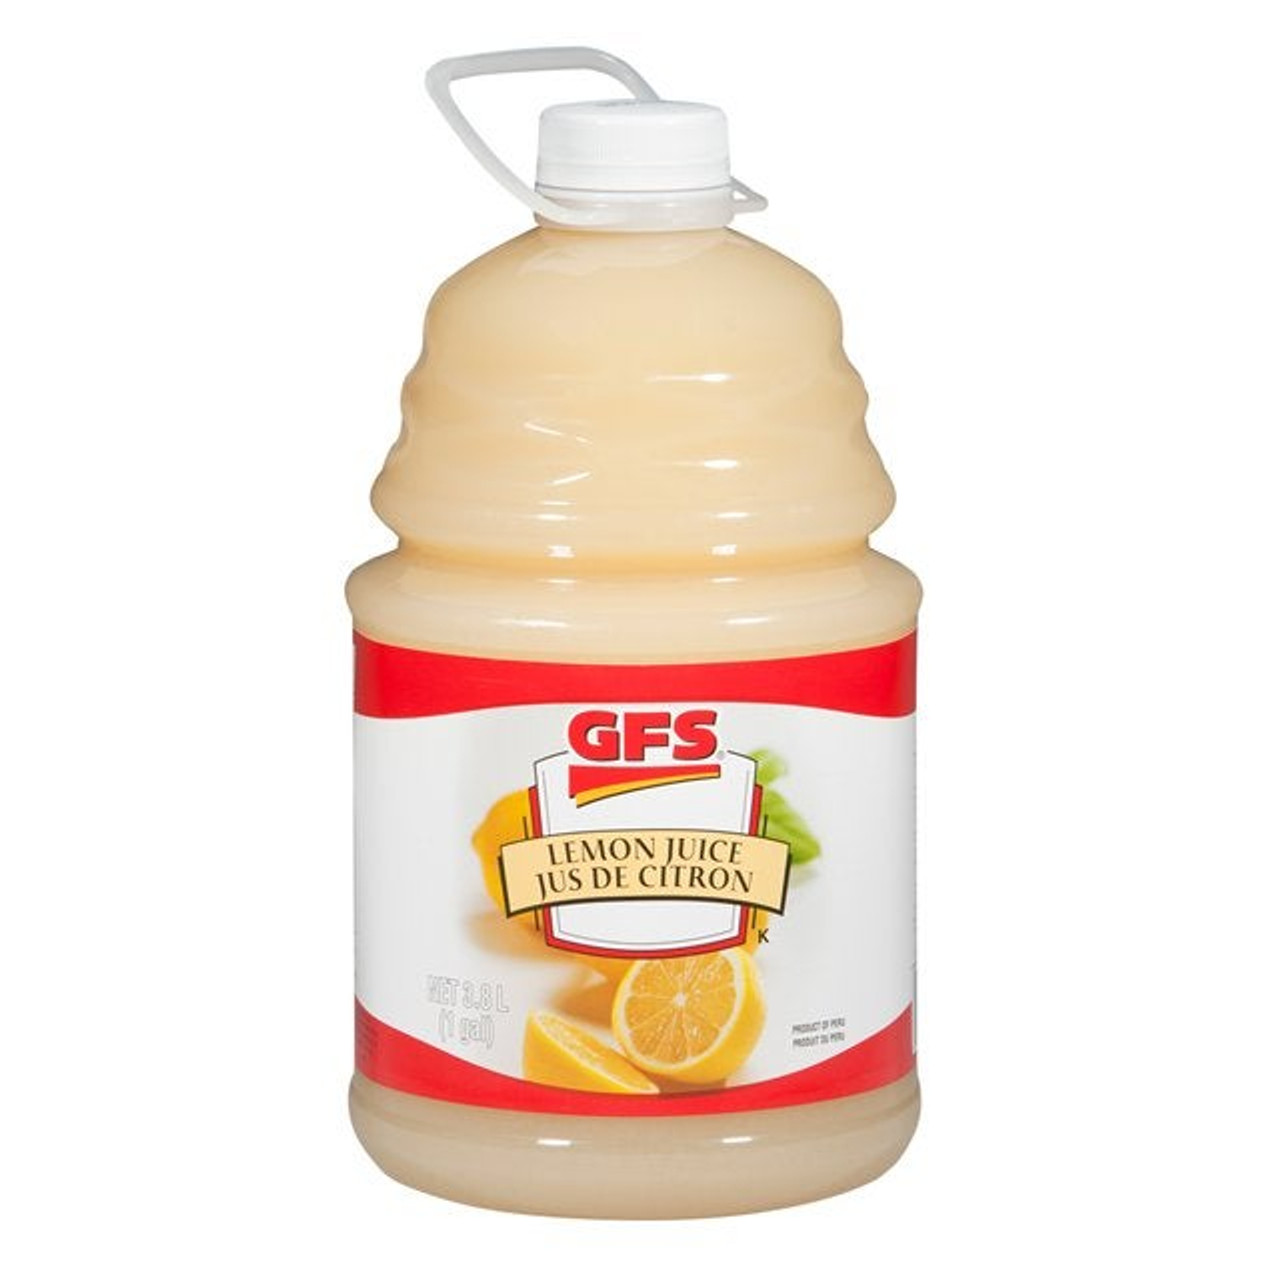 Gordon Choice Lemon Juice | 3.8L/Unit, 2 Units/Case